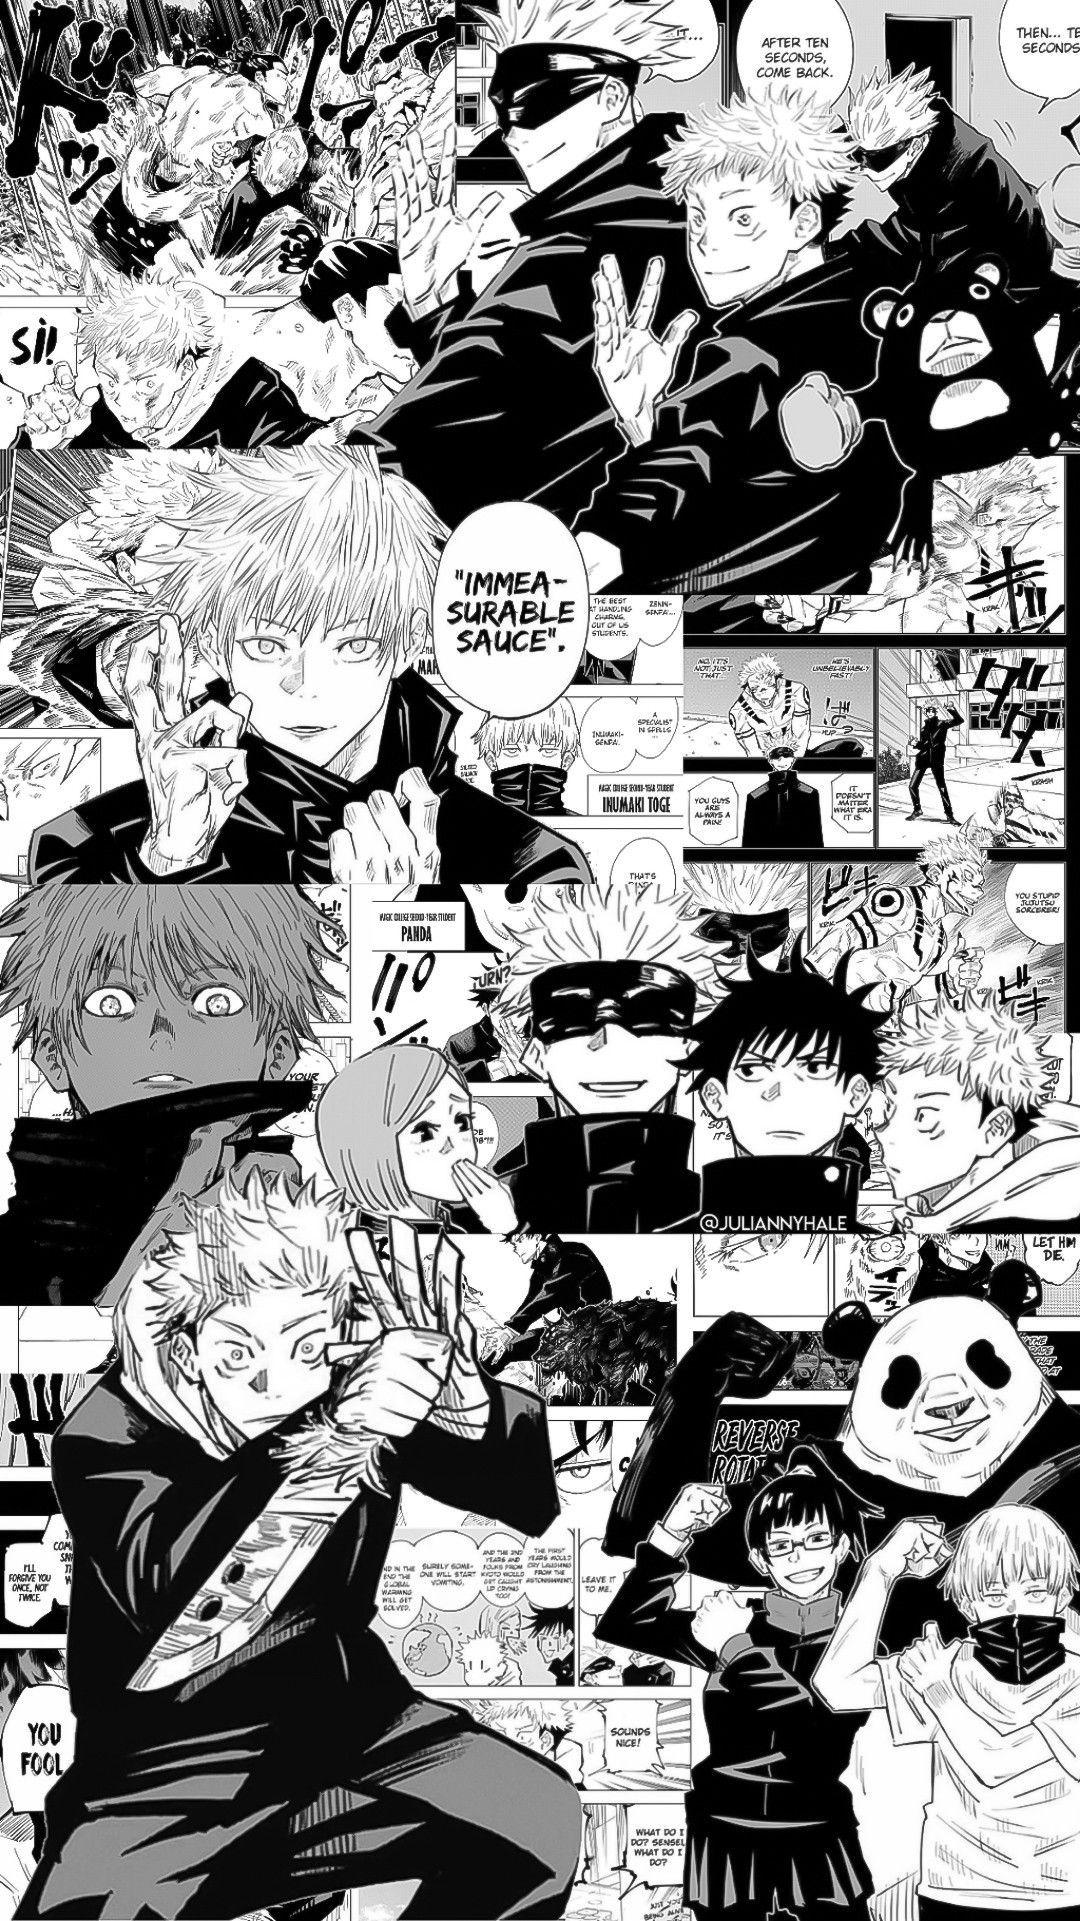 Jujutsu Kaisen Manga Wallpapers - Top Free Jujutsu Kaisen Manga Backgrounds  - WallpaperAccess